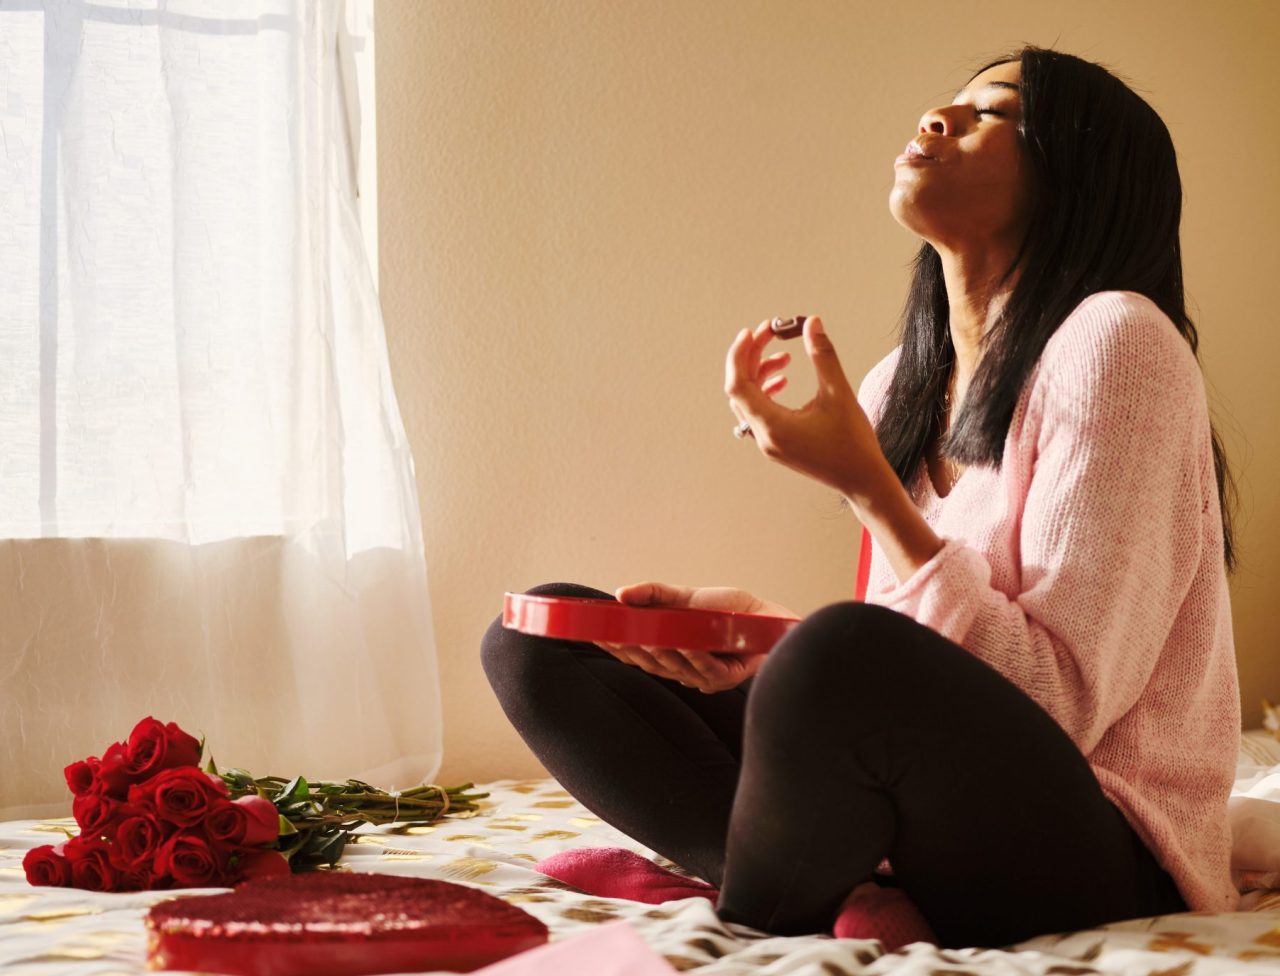 En dame sitter alene og koser seg med valentines sjokolade